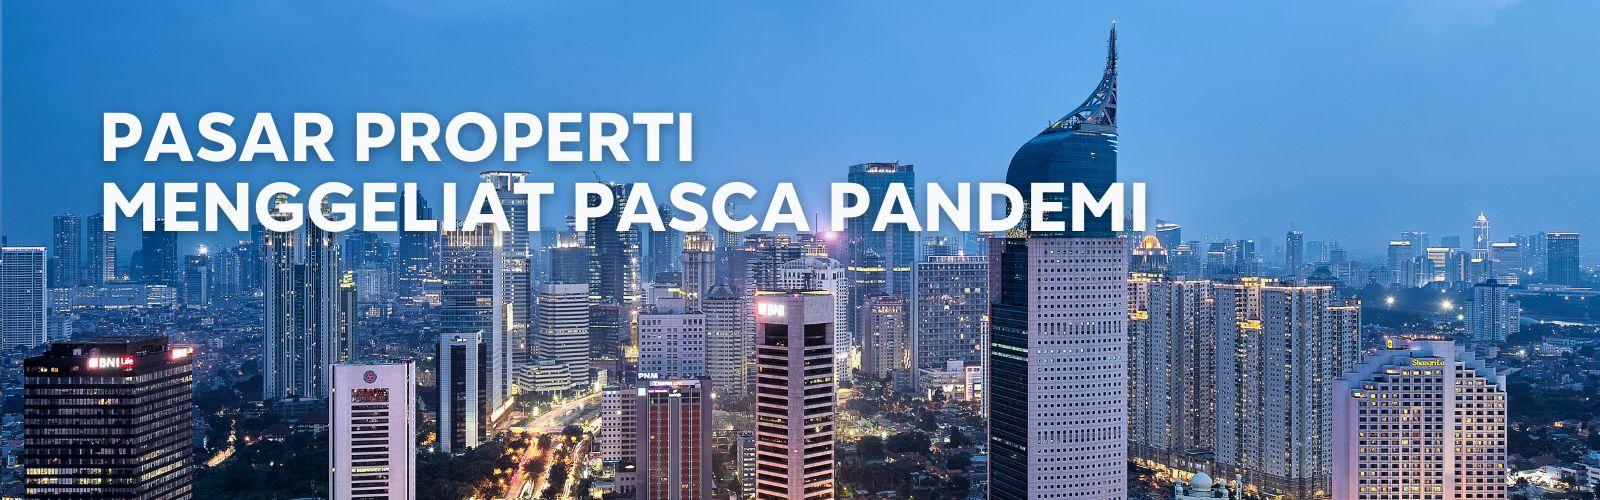 Pasar Properti Indonesia Menggeliat Pasca Pandemi